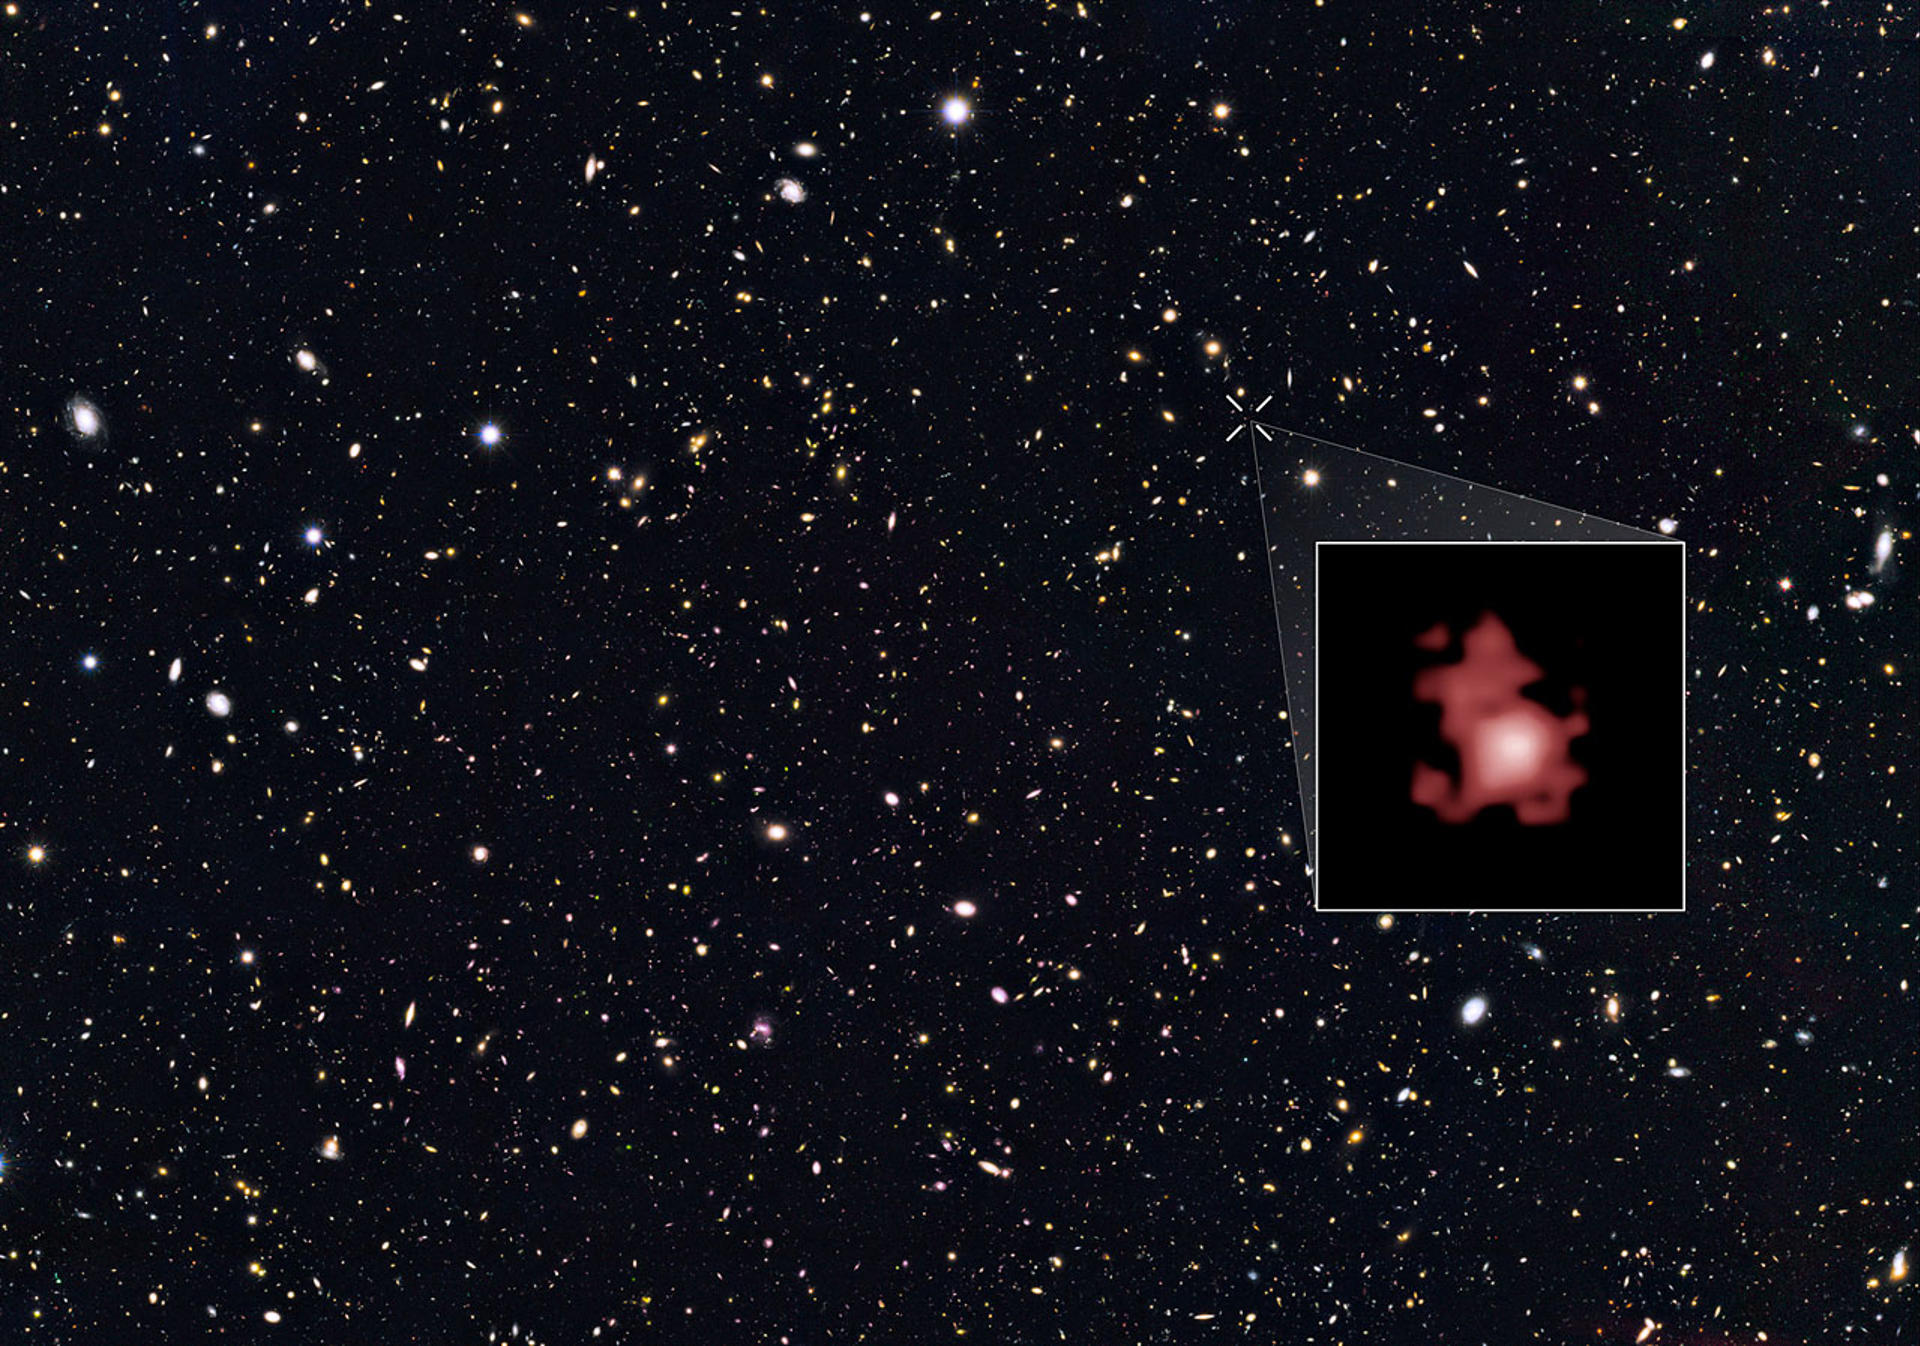 Telescopio Webb descubre el agujero negro más antiguo observado jamás